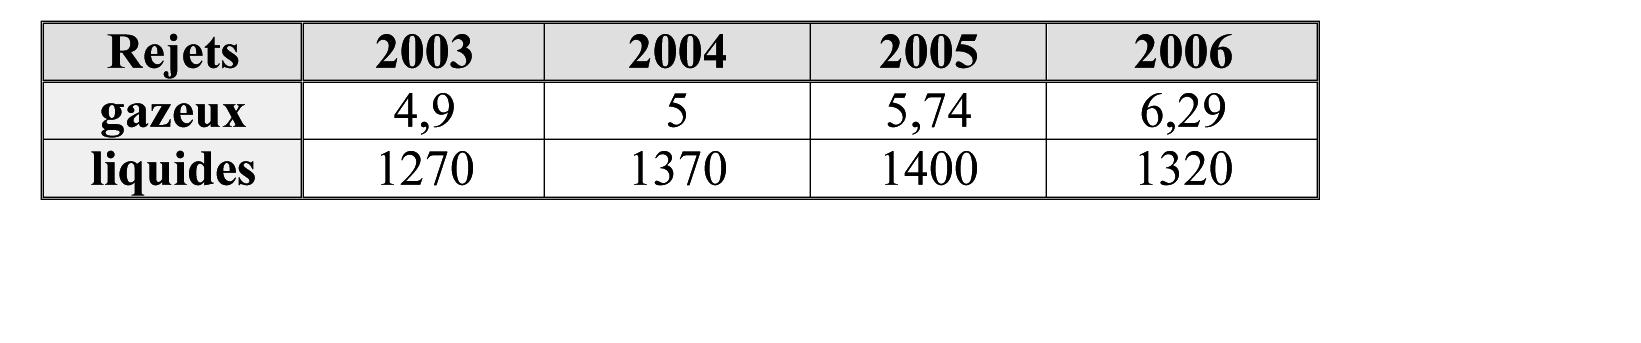 Rejets d’129I de 2003 à 2006